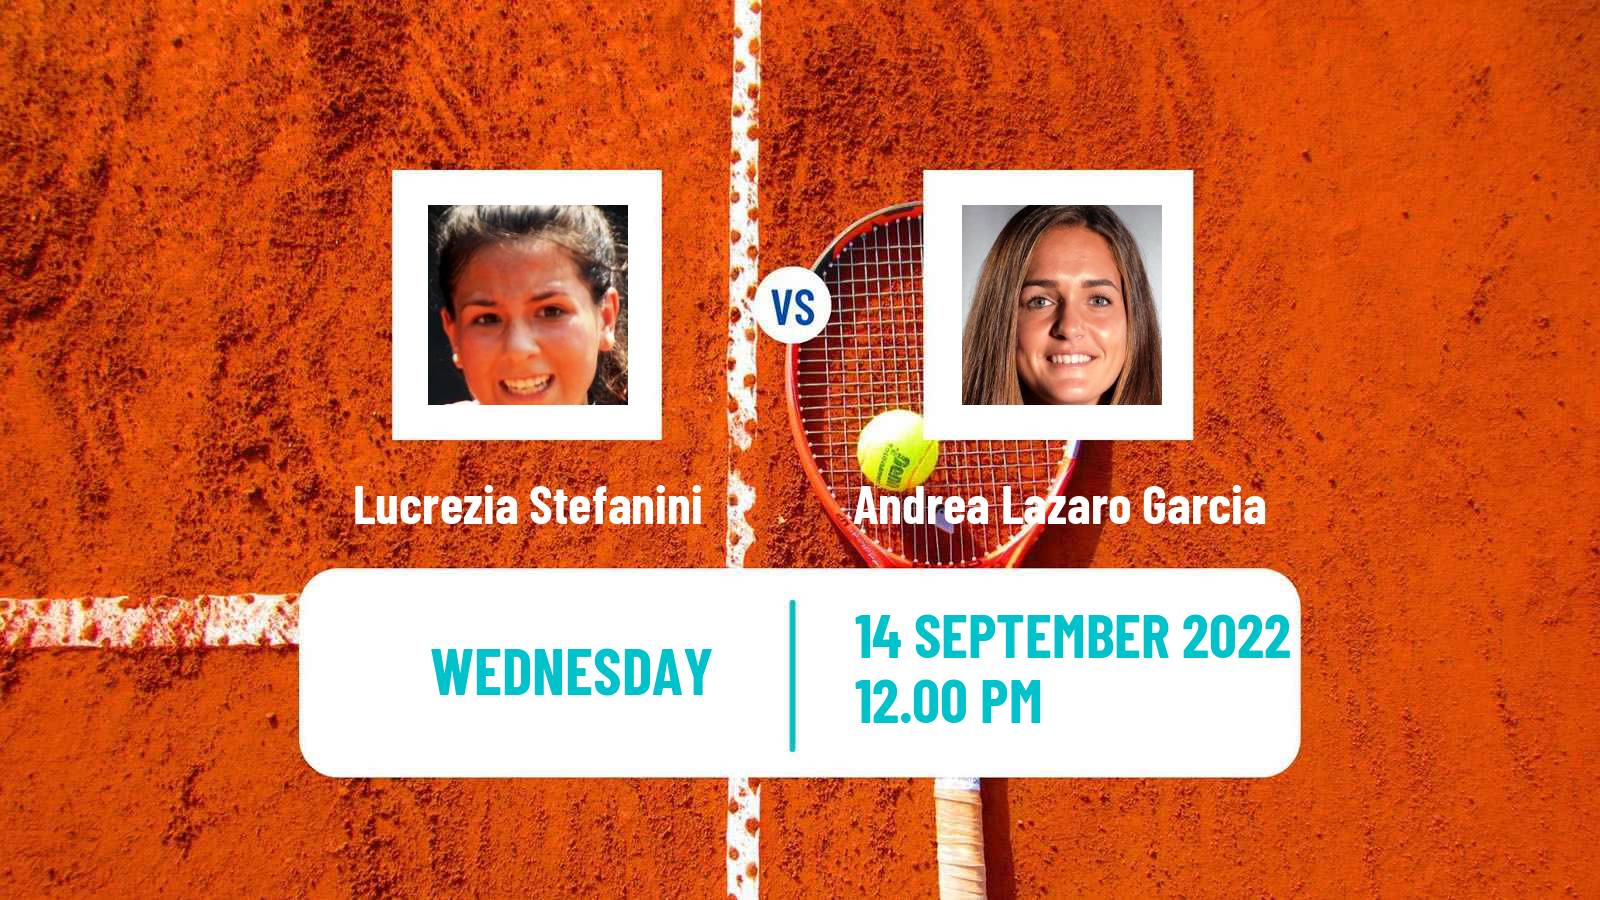 Tennis ITF Tournaments Lucrezia Stefanini - Andrea Lazaro Garcia